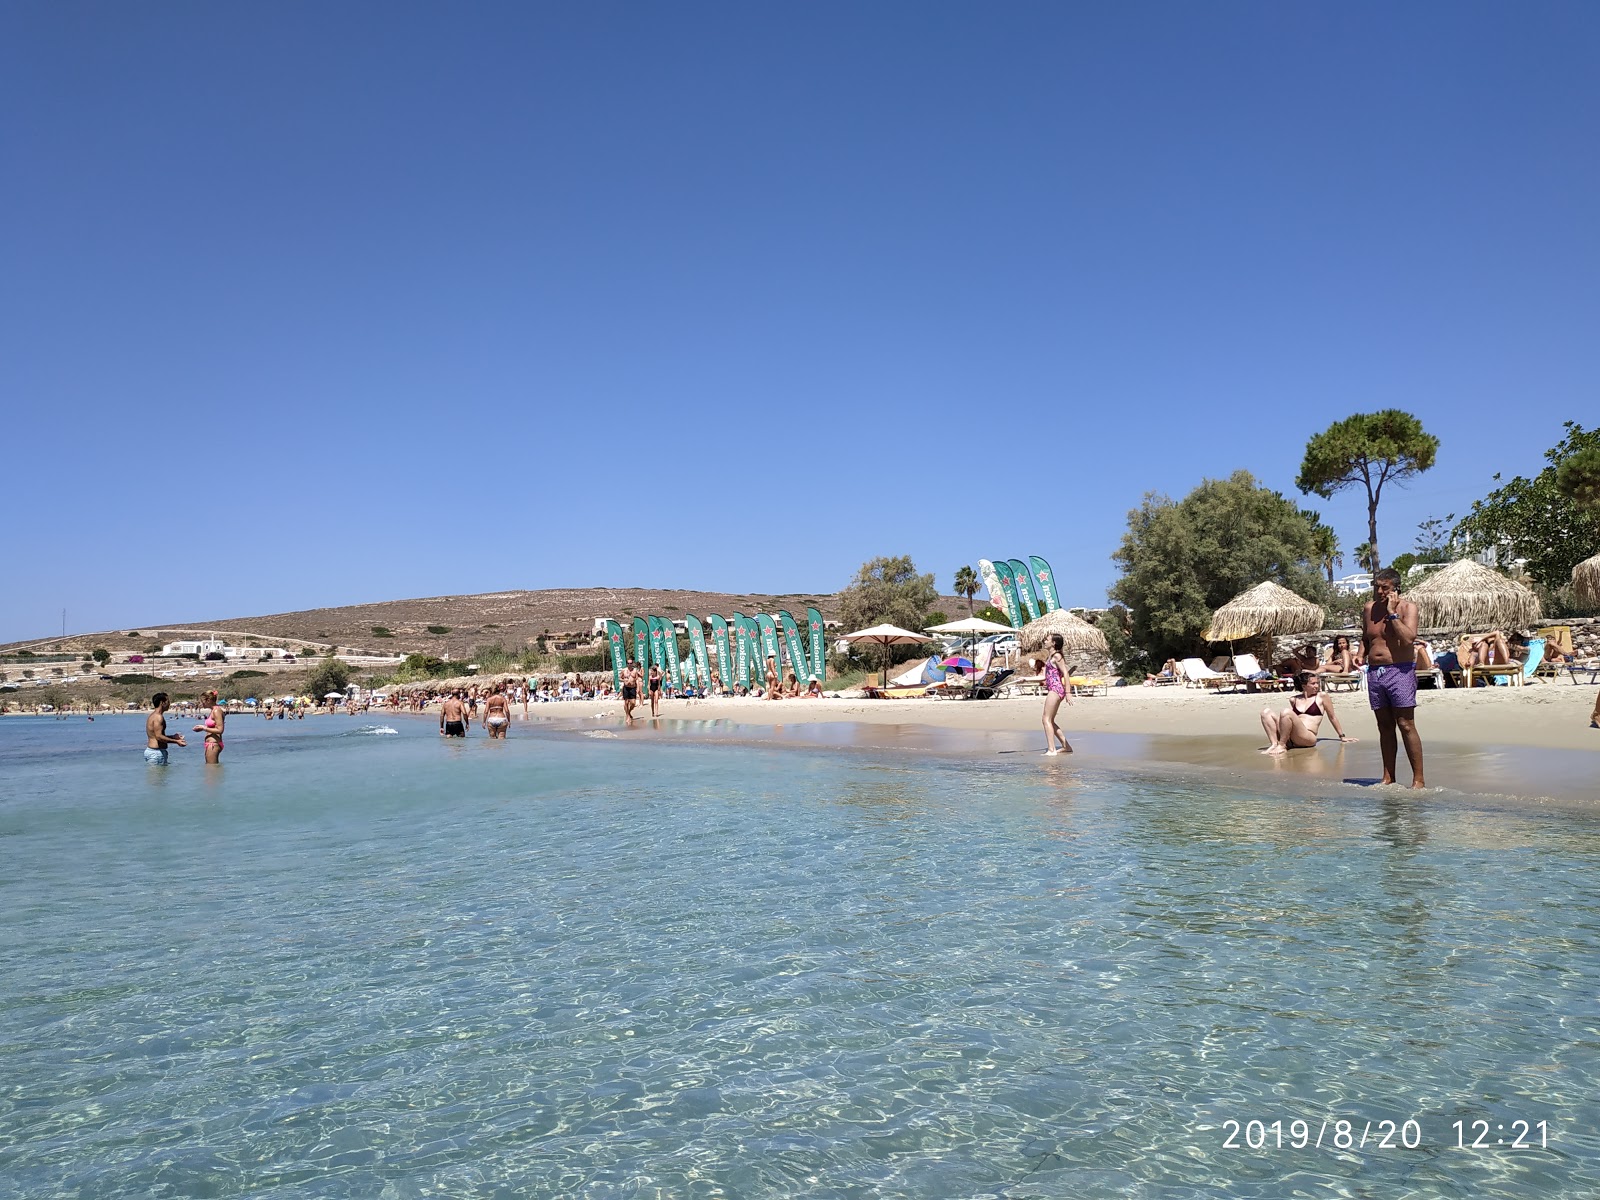 Krios beach II'in fotoğrafı parlak ince kum yüzey ile